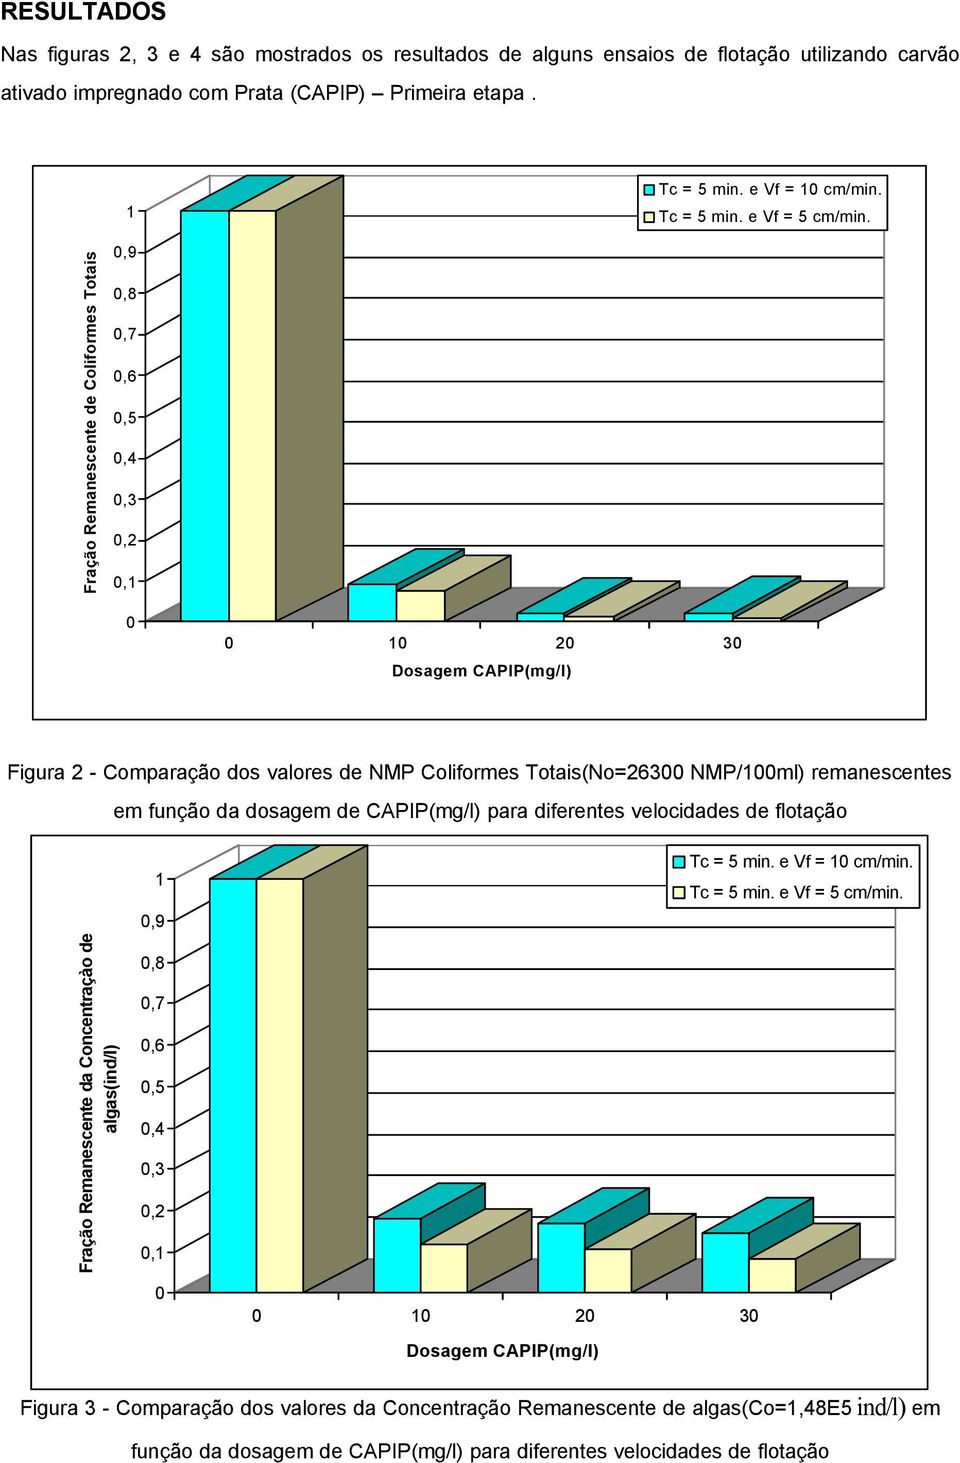 Fração Remanescente de Coliformes Totais,9,8,7,6,5,4,3,2,1 1 2 3 Dosagem CAPIP(mg/l) Figura 2 - Comparação dos valores de NMP Coliformes Totais(No=263 NMP/1ml) remanescentes em função da dosagem de